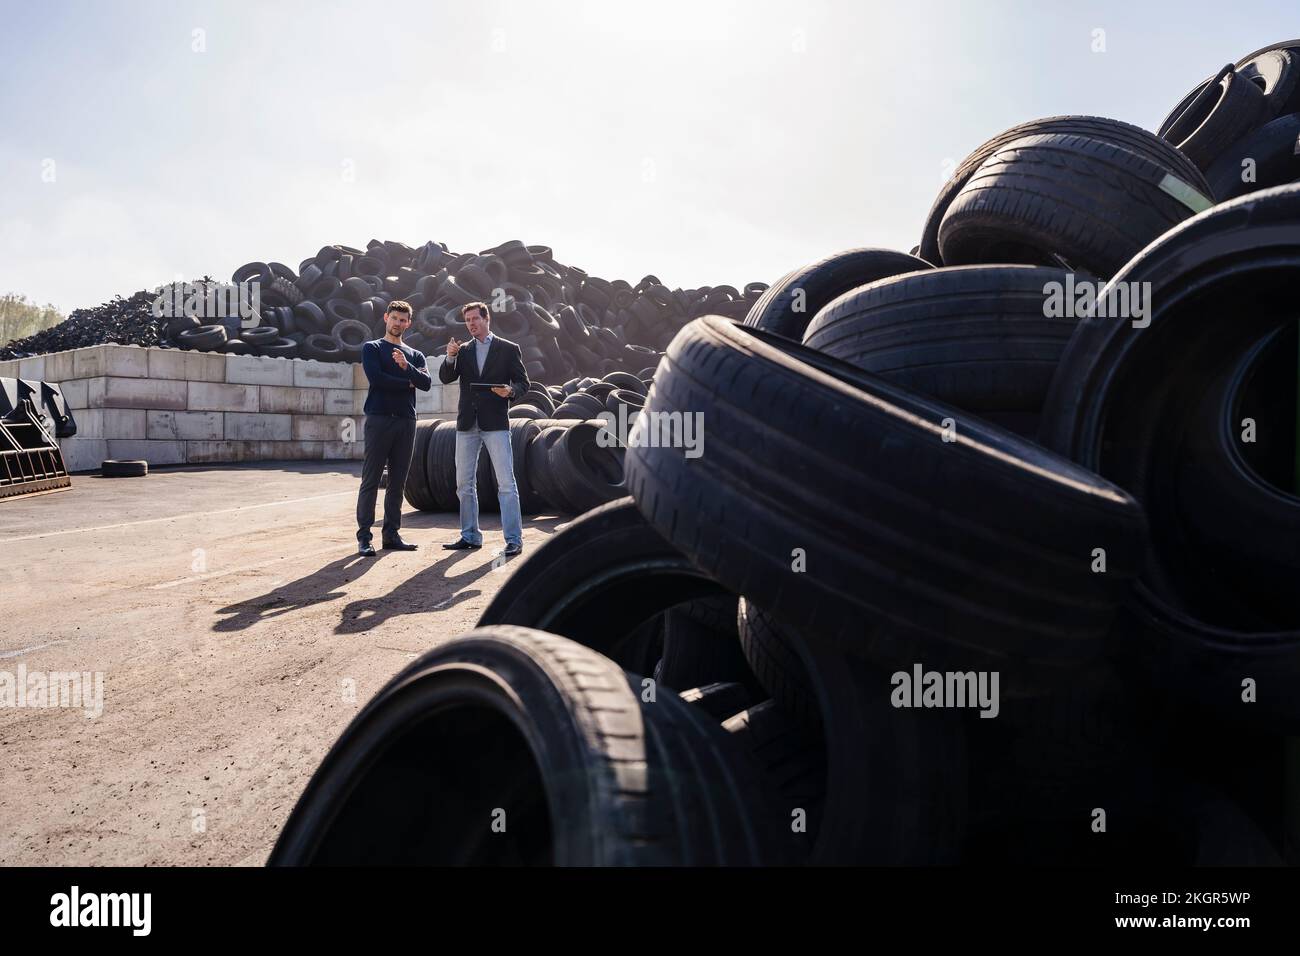 Les hommes d'affaires discutent du tas de pneus en caoutchouc à l'usine de recyclage Banque D'Images